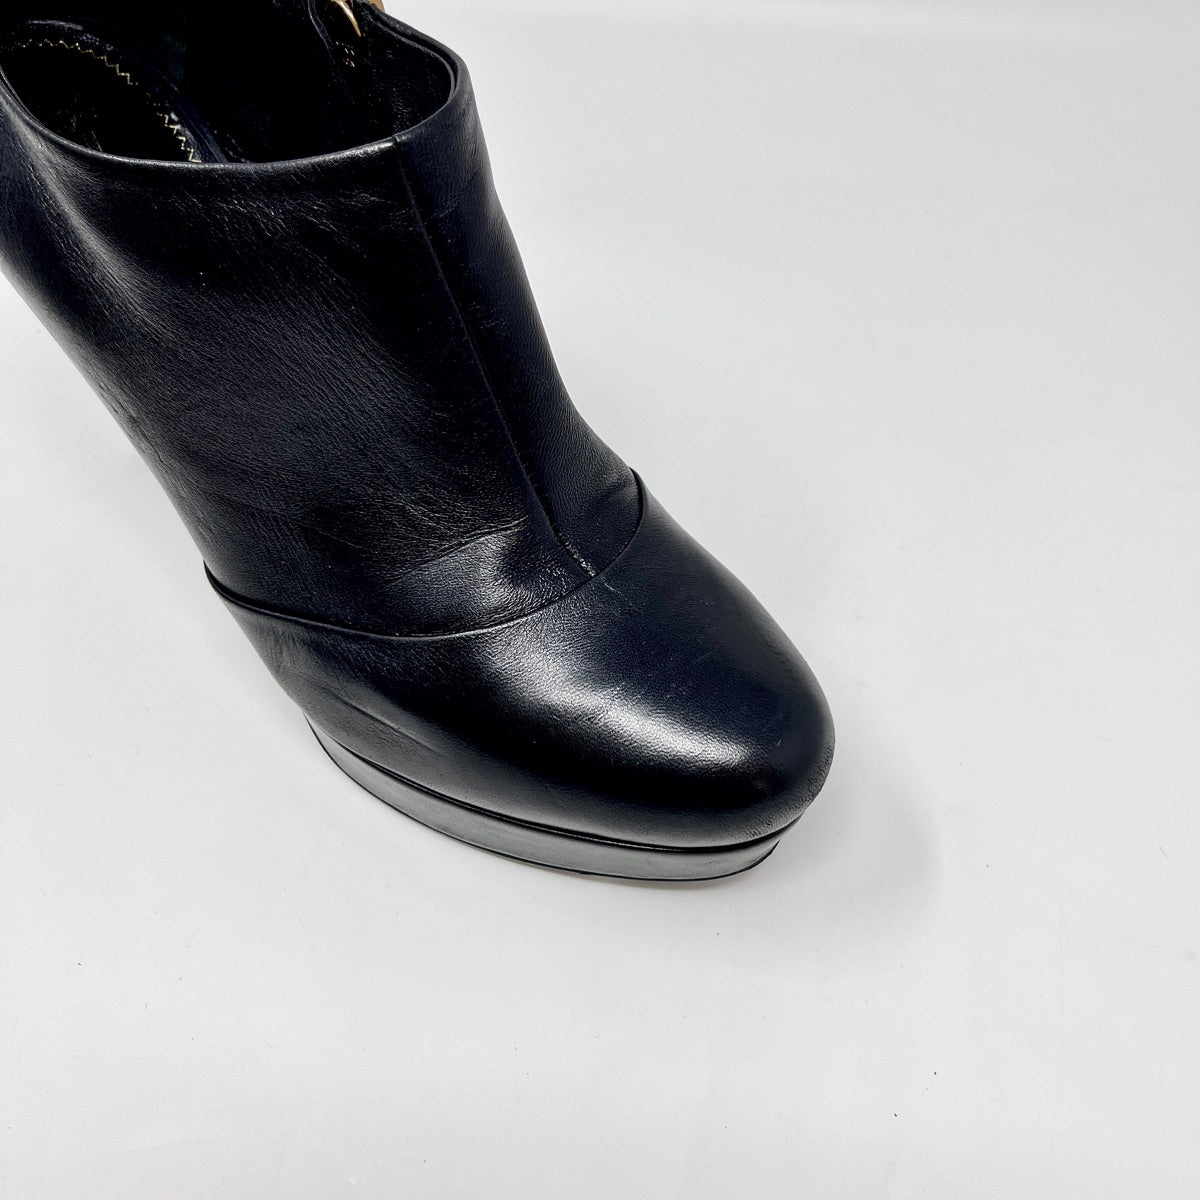 Yves Saint Laurent Boots